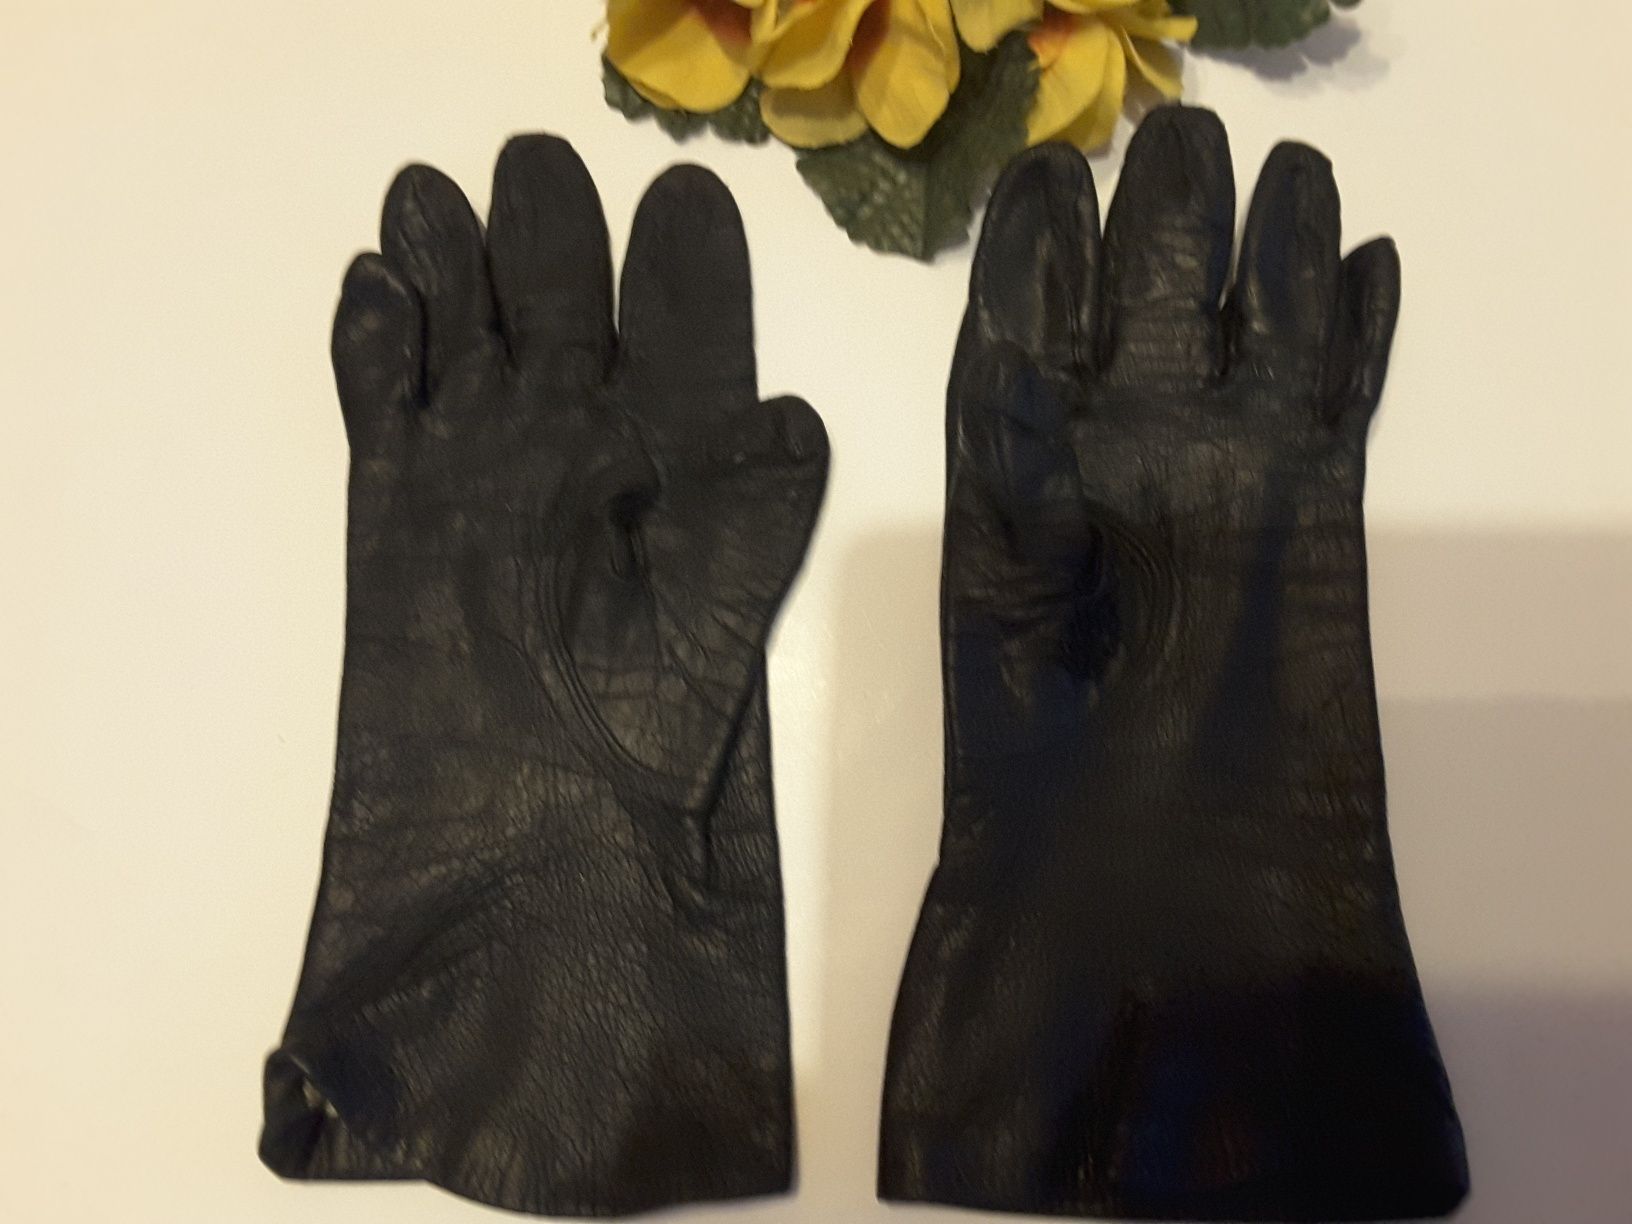 Rękawiczki skórzane czarne